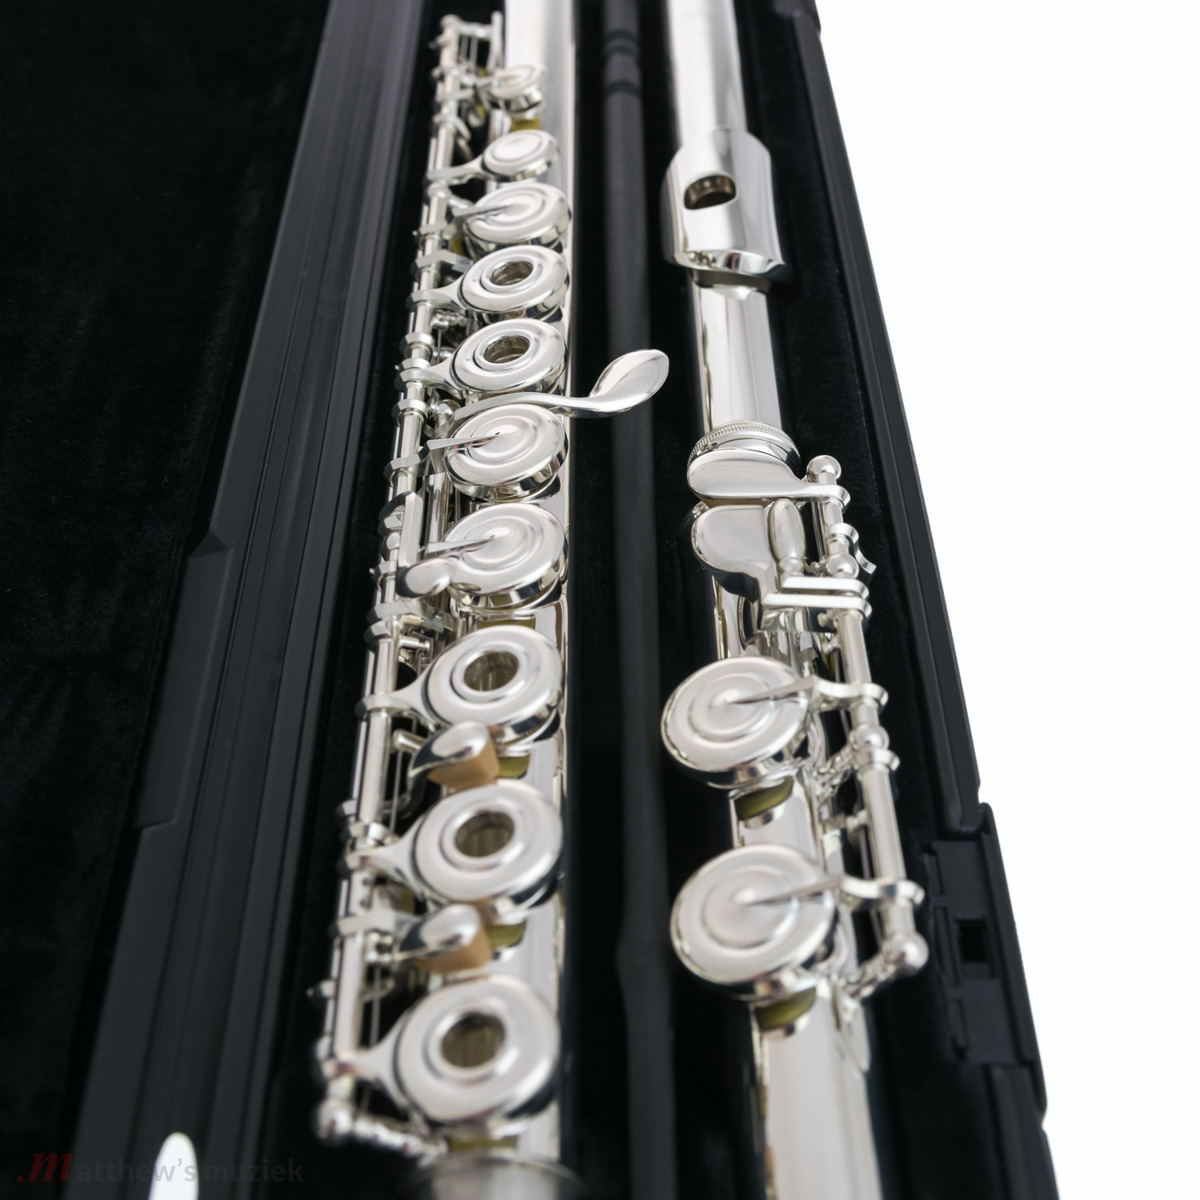 Yamaha Flute - YFL-282